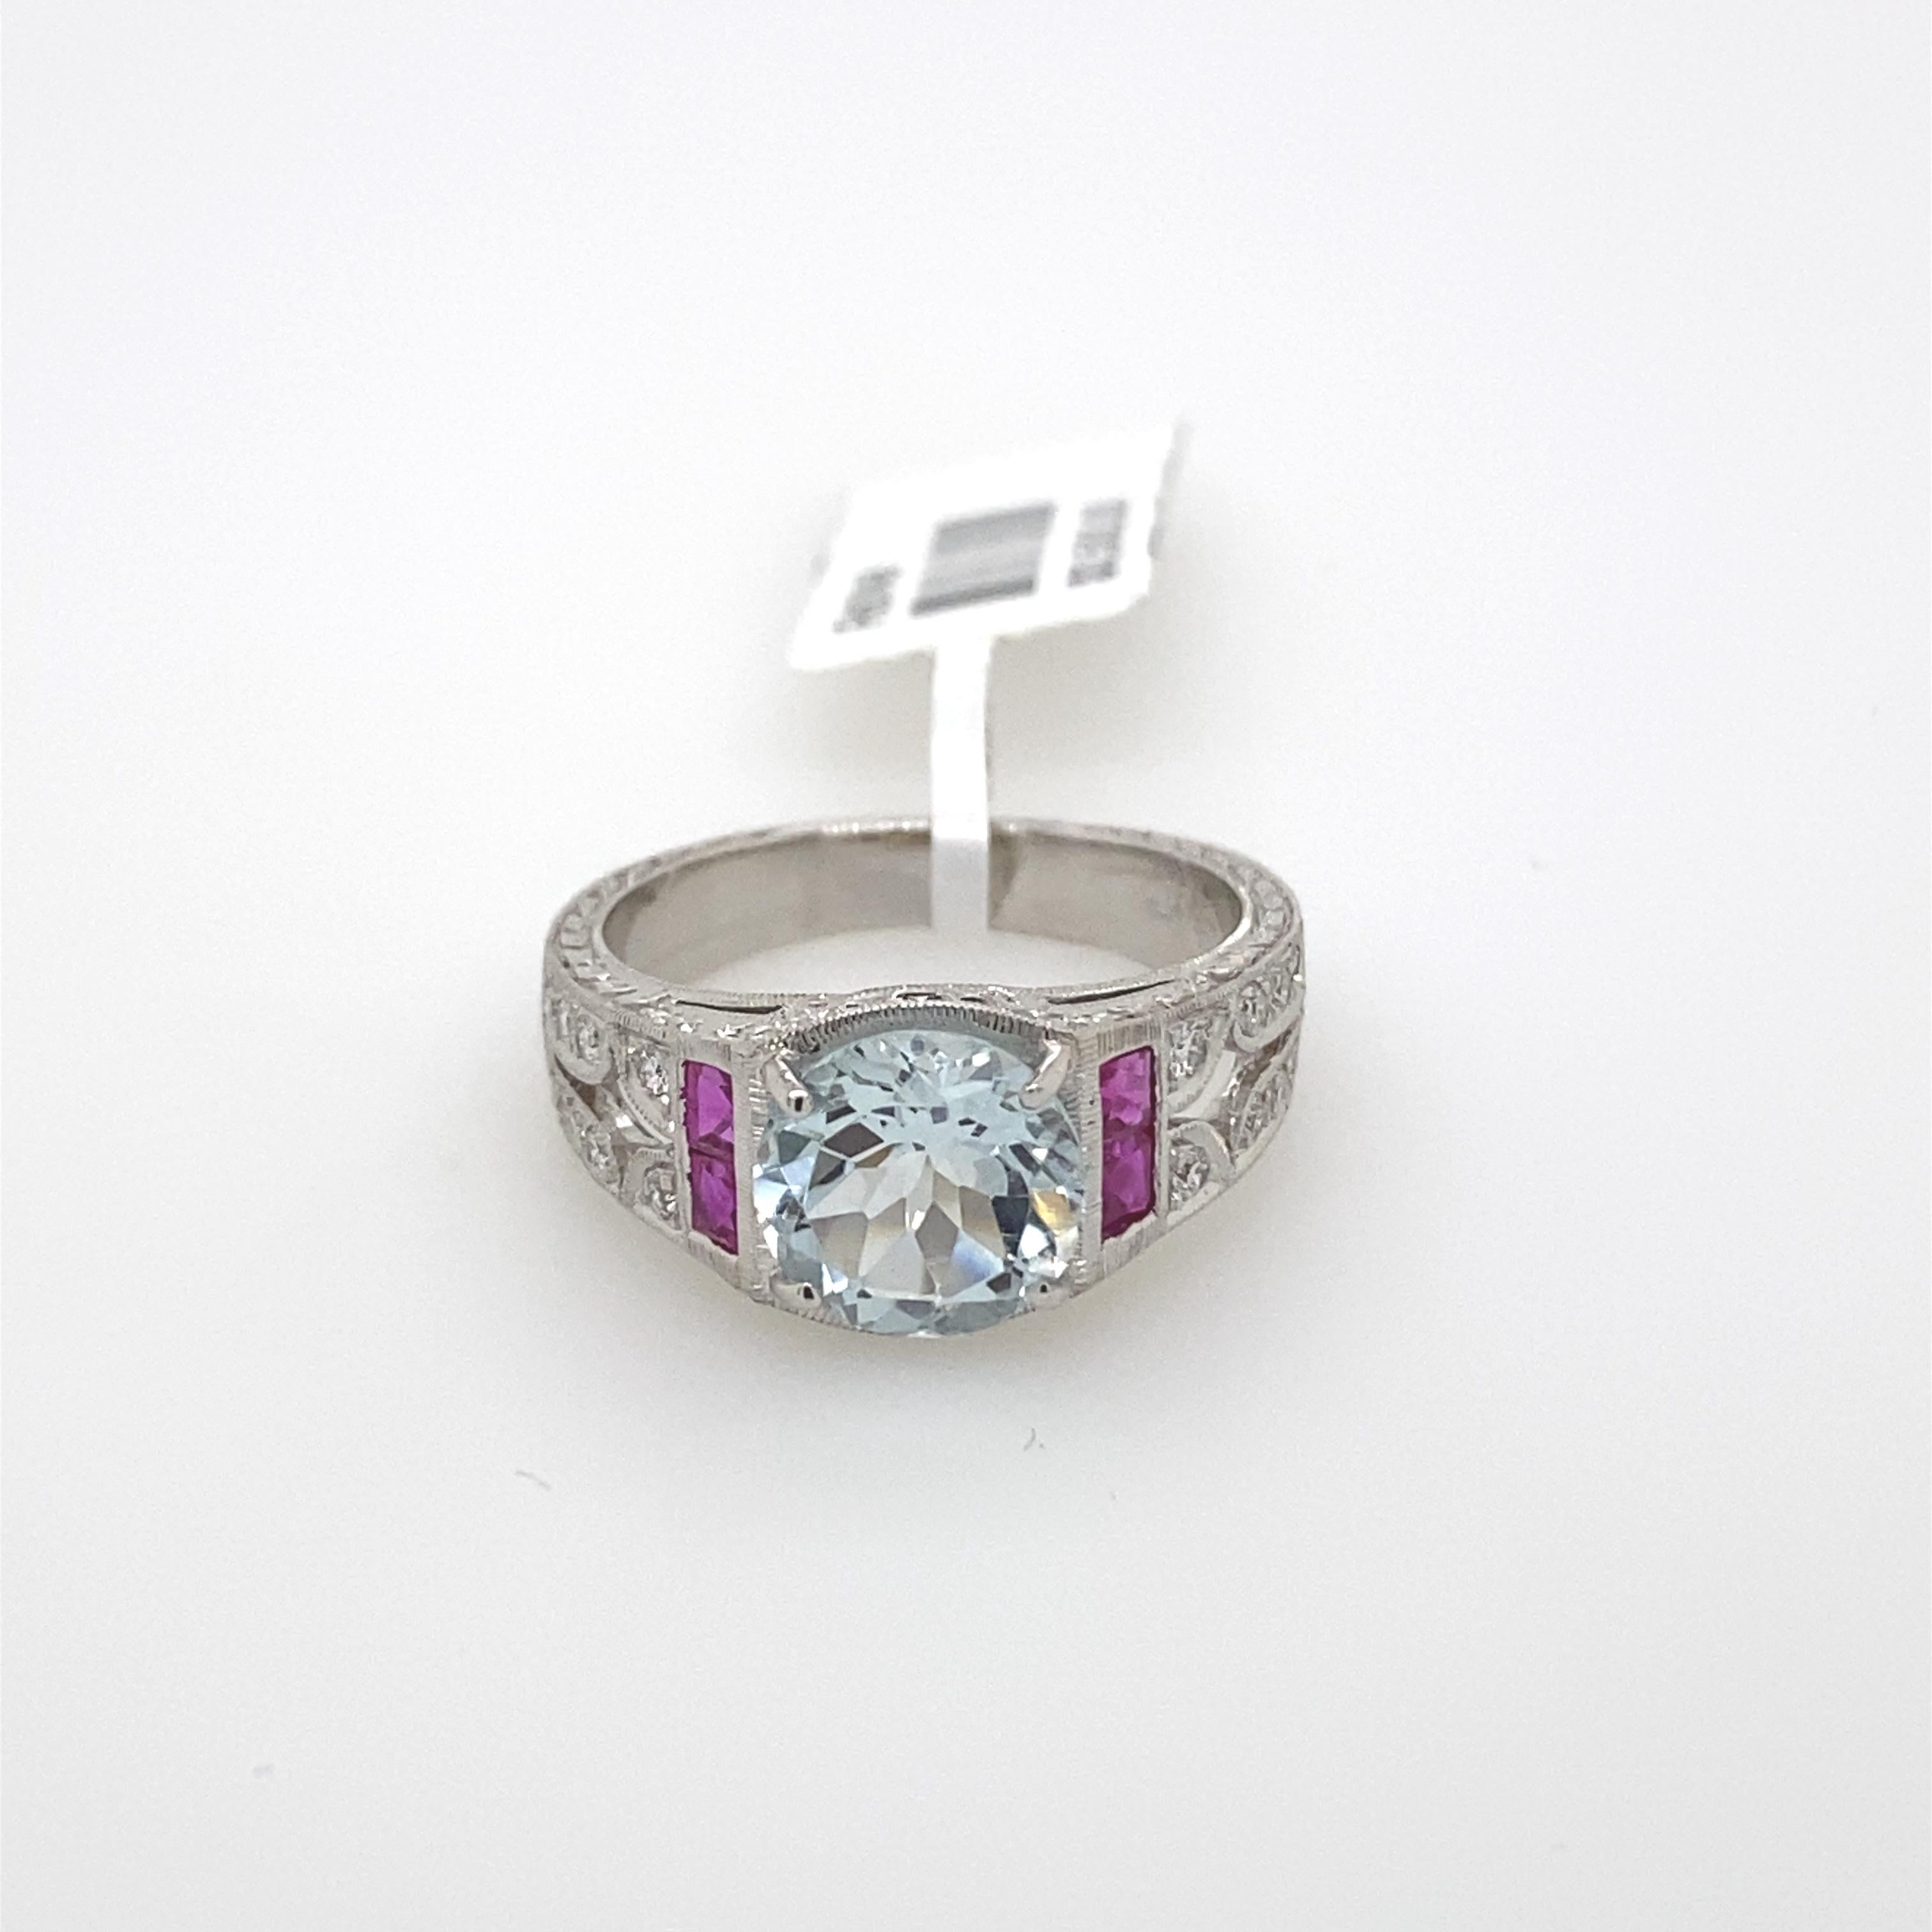 Women's Art Deco Inspired 2 Carat Aquamarine, Ruby, and Diamond Ring 18 Karat White Gold